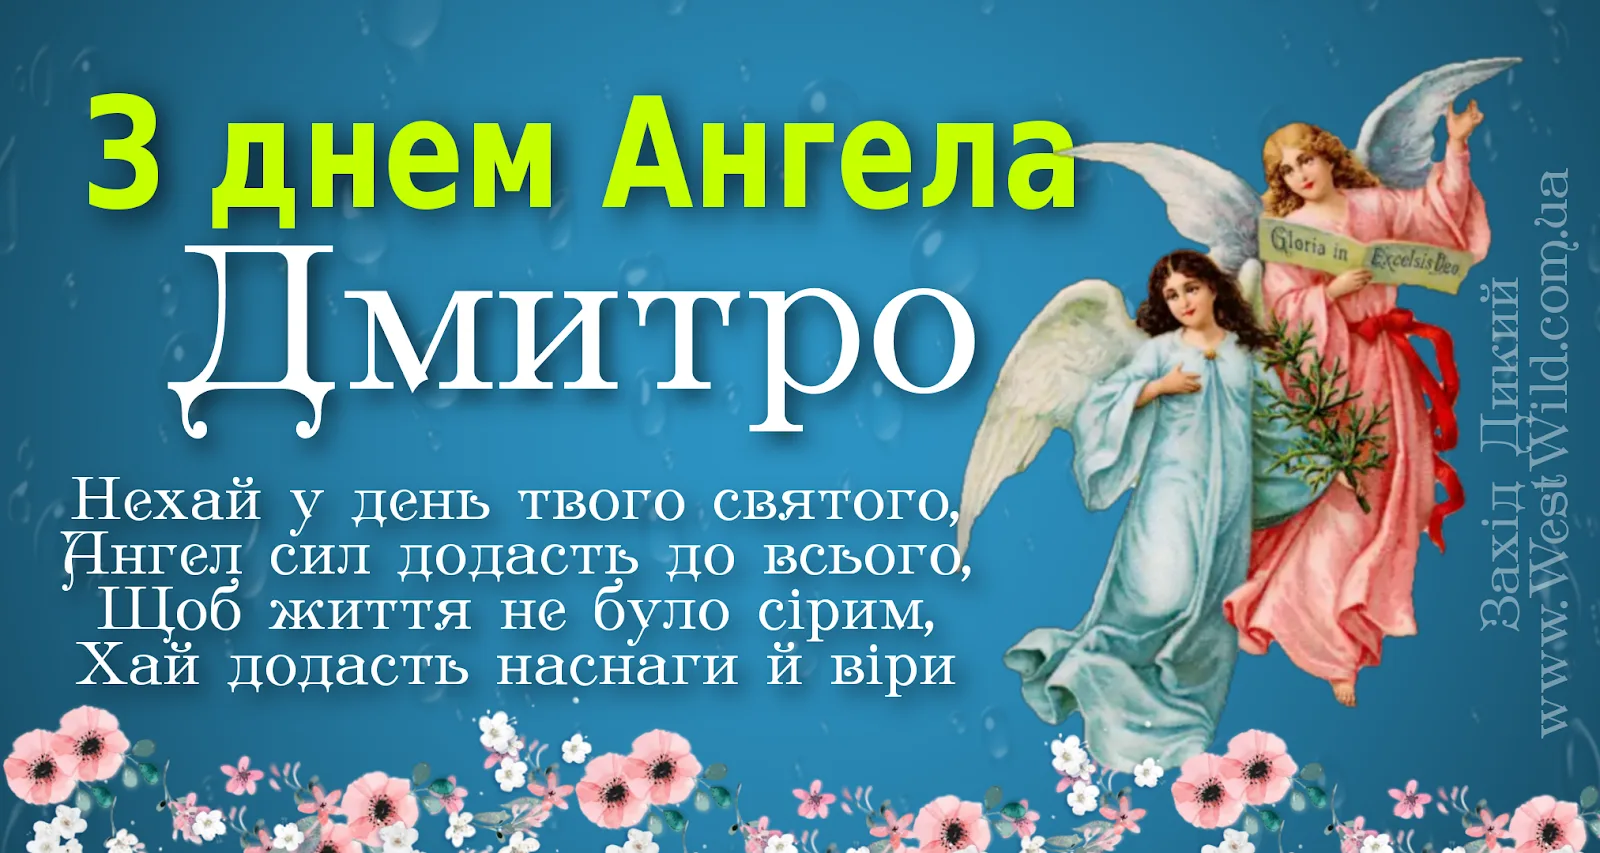 Открытки с днём ангела Дмитрия. Поздравить Дмитрия с днем ангела. День дмитрия картинки поздравления